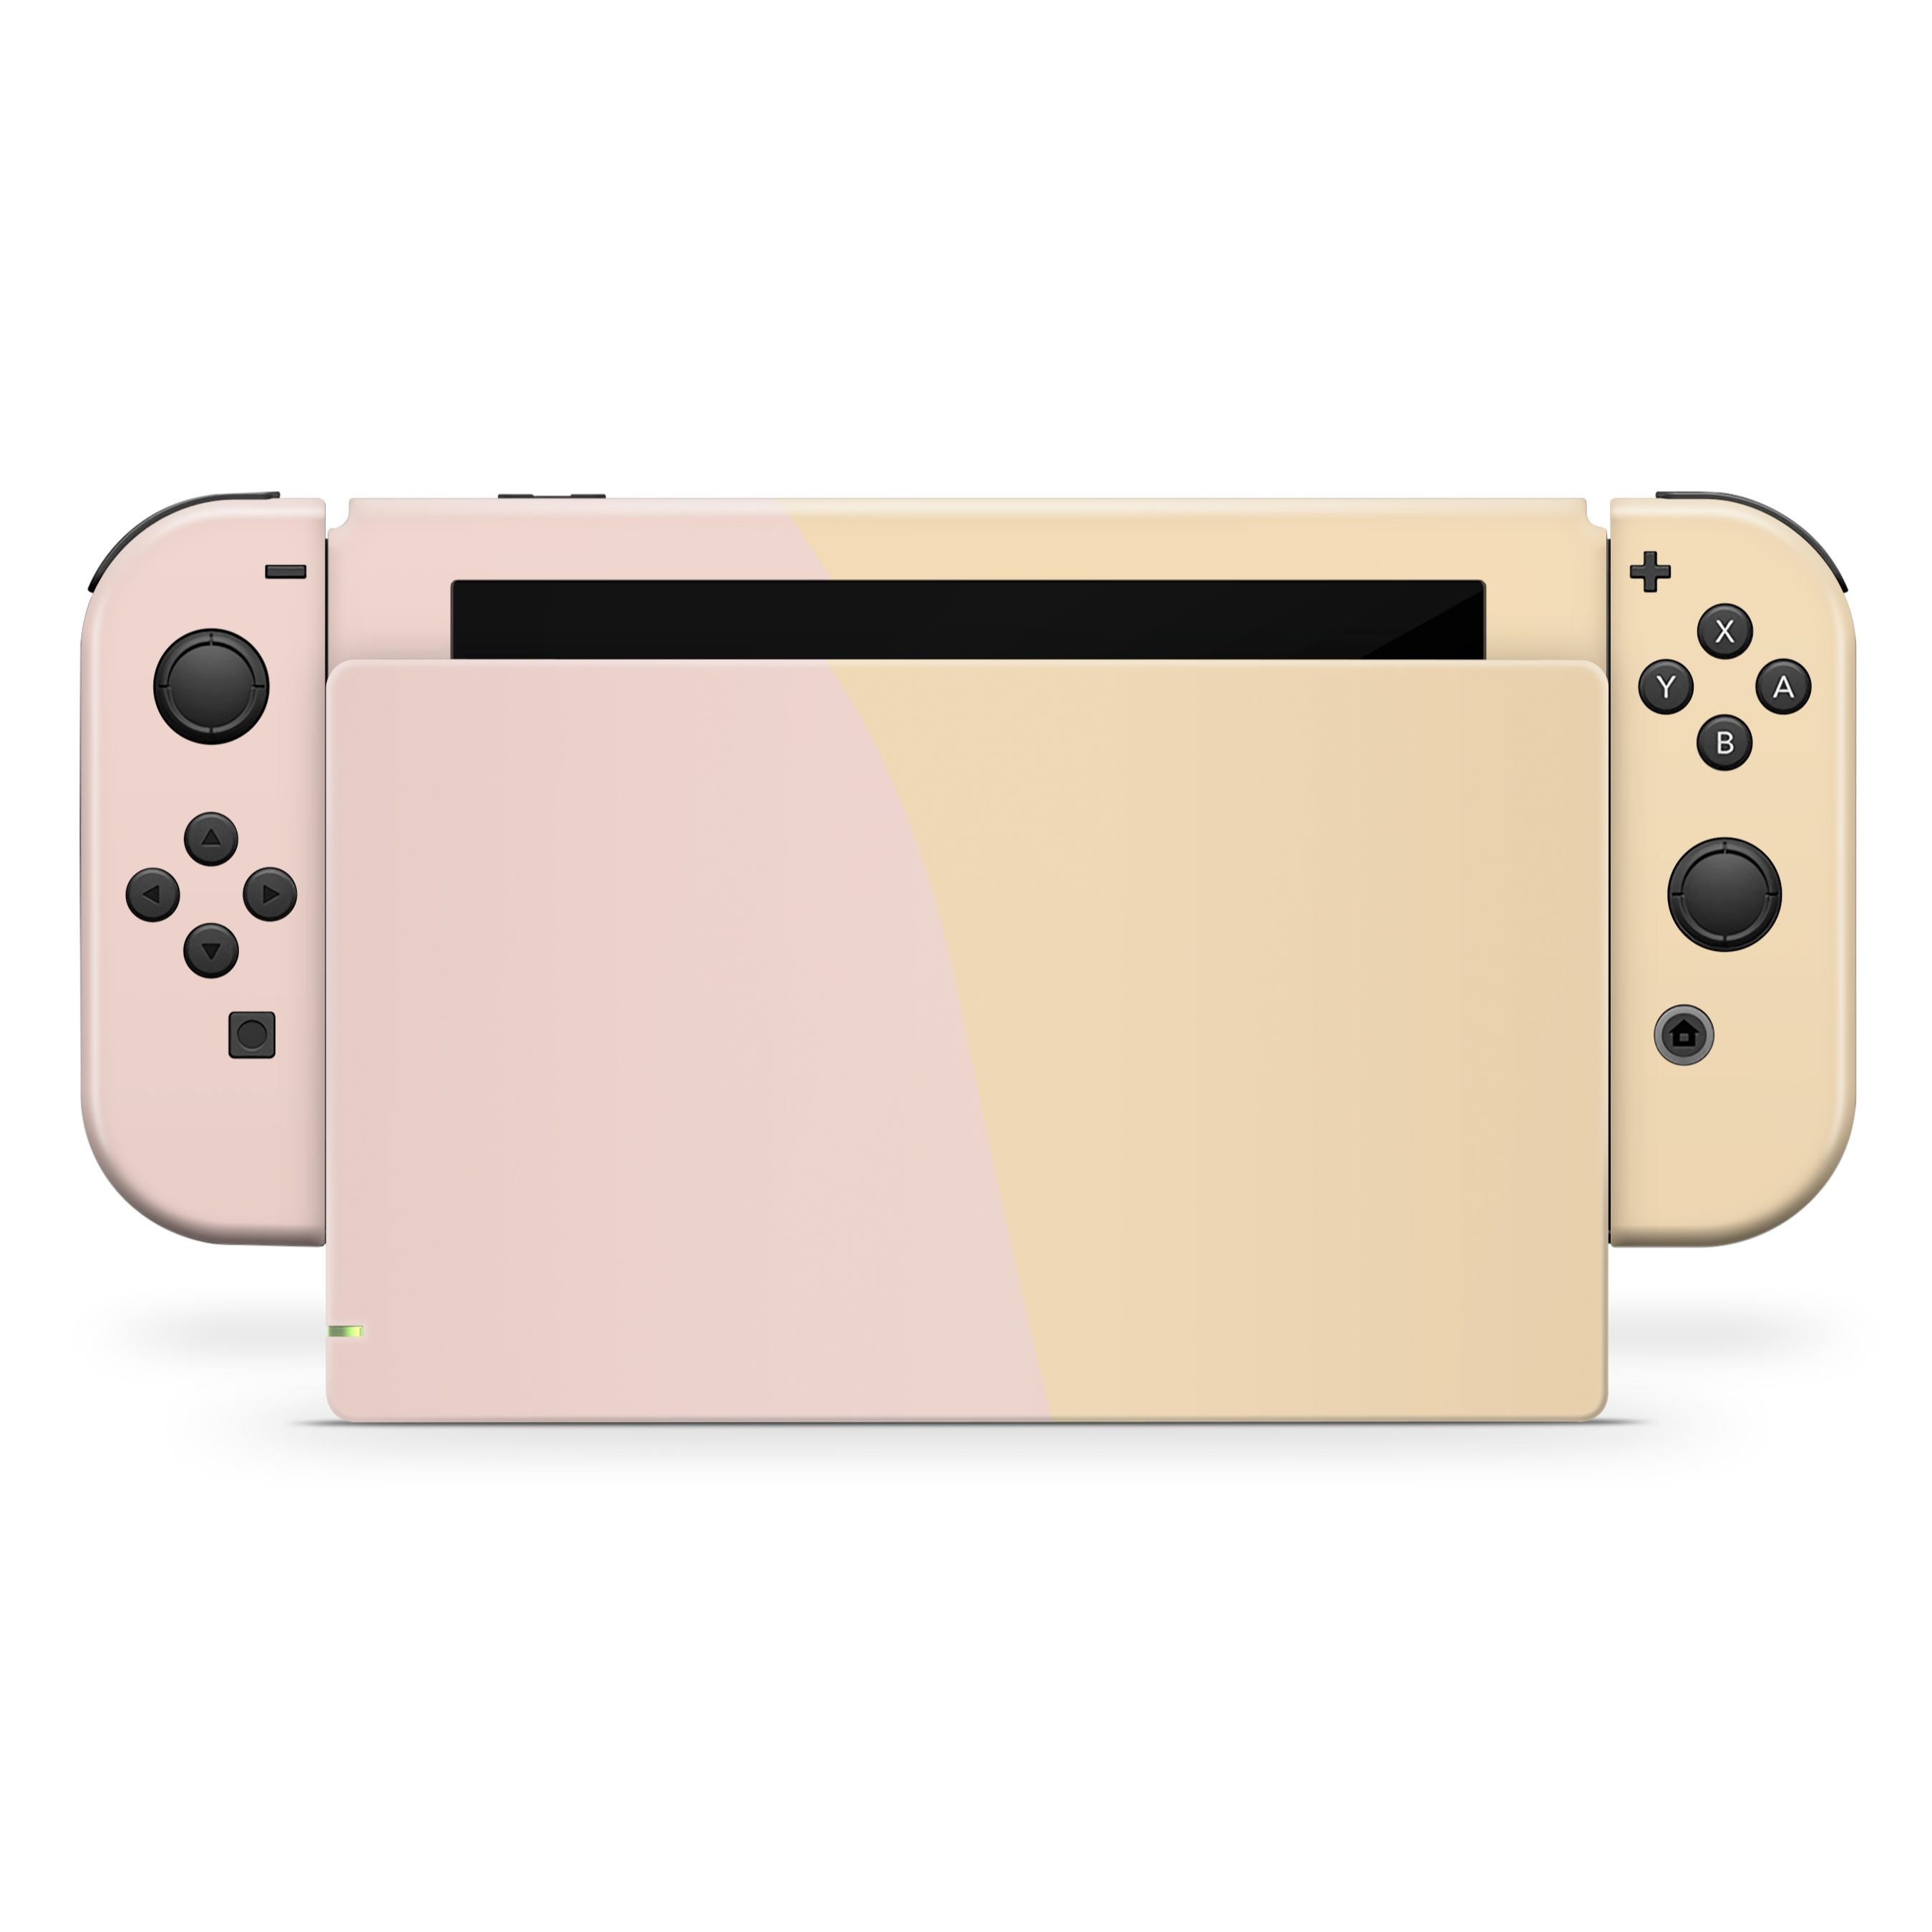 Peach-y and Flower Daisy Nintendo Switch Custom Joy-Cons | CptnAlex Designs